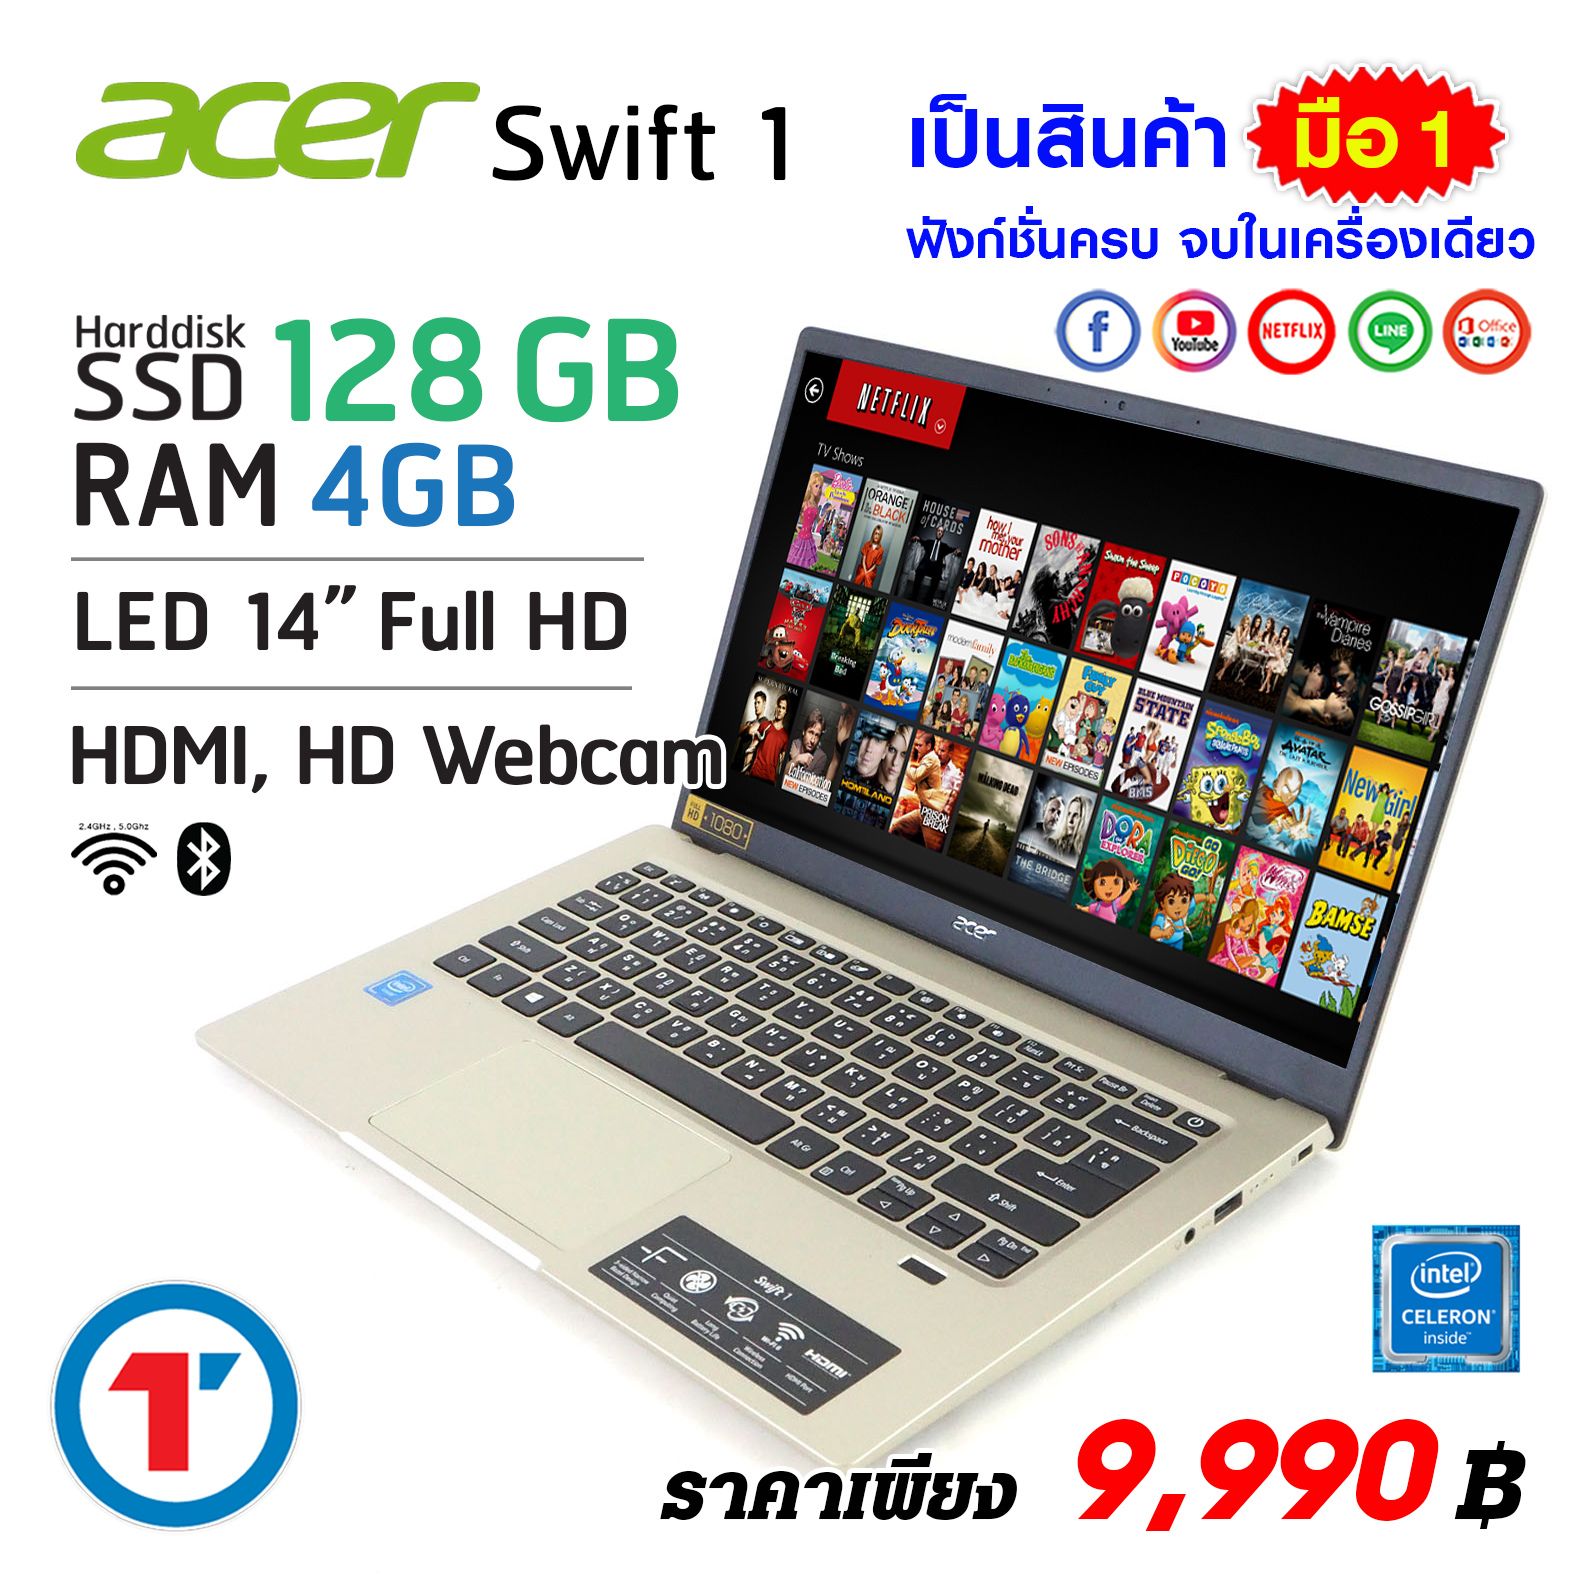 โน๊ตบุ๊ค Acer Swift หน้าจอ 14 นิ้ว RAM 4 SSD 128 GB Wifi 6 + Bluetooth 4.2  New laptop notebook computer 2021 ส่งฟรี มีประกันและบริการหลังการขาย By Totalsolution